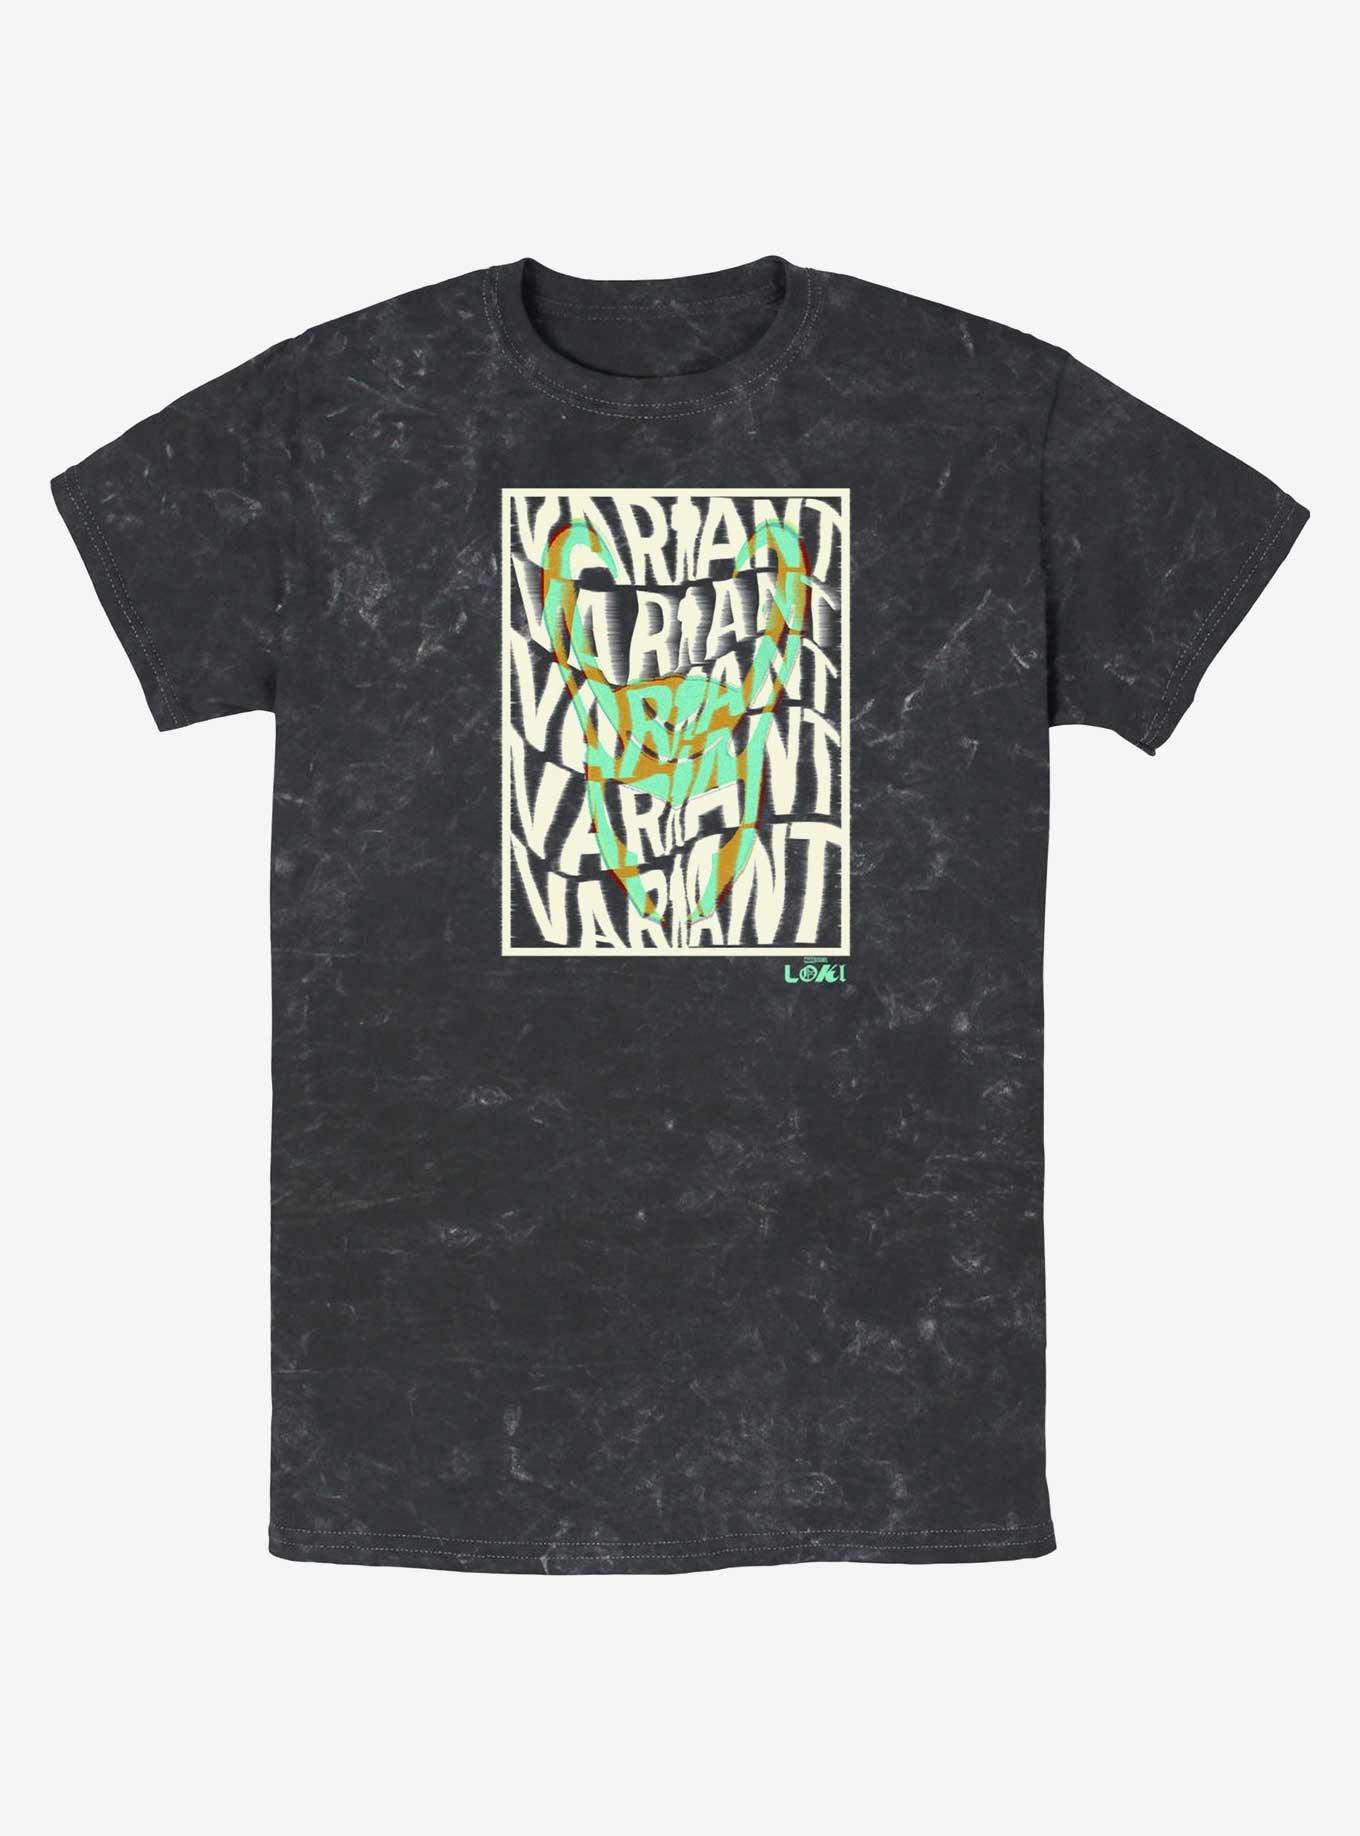 Marvel Loki Variant Ready For Deletion Mineral Wash T-Shirt, BLACK, hi-res